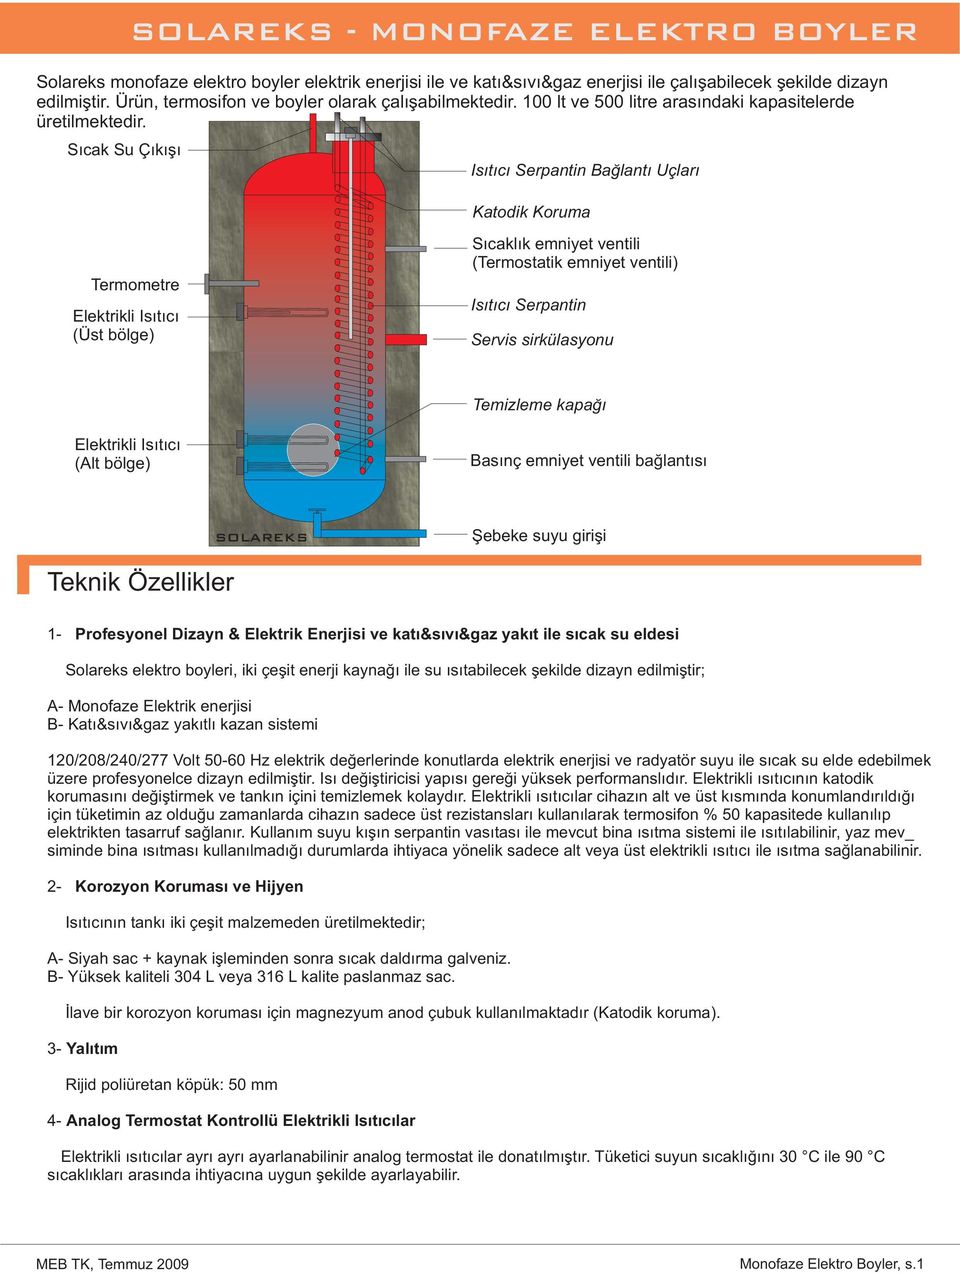 Sıcak Su Çıkışı Isıtıcı Serpantin Bağlantı Uçları Katodik Koruma Termometre Elektrikli Isıtıcı (Üst bölge) Sıcaklık emniyet ventili (Termostatik emniyet ventili) Isıtıcı Serpantin Servis sirkülasyonu